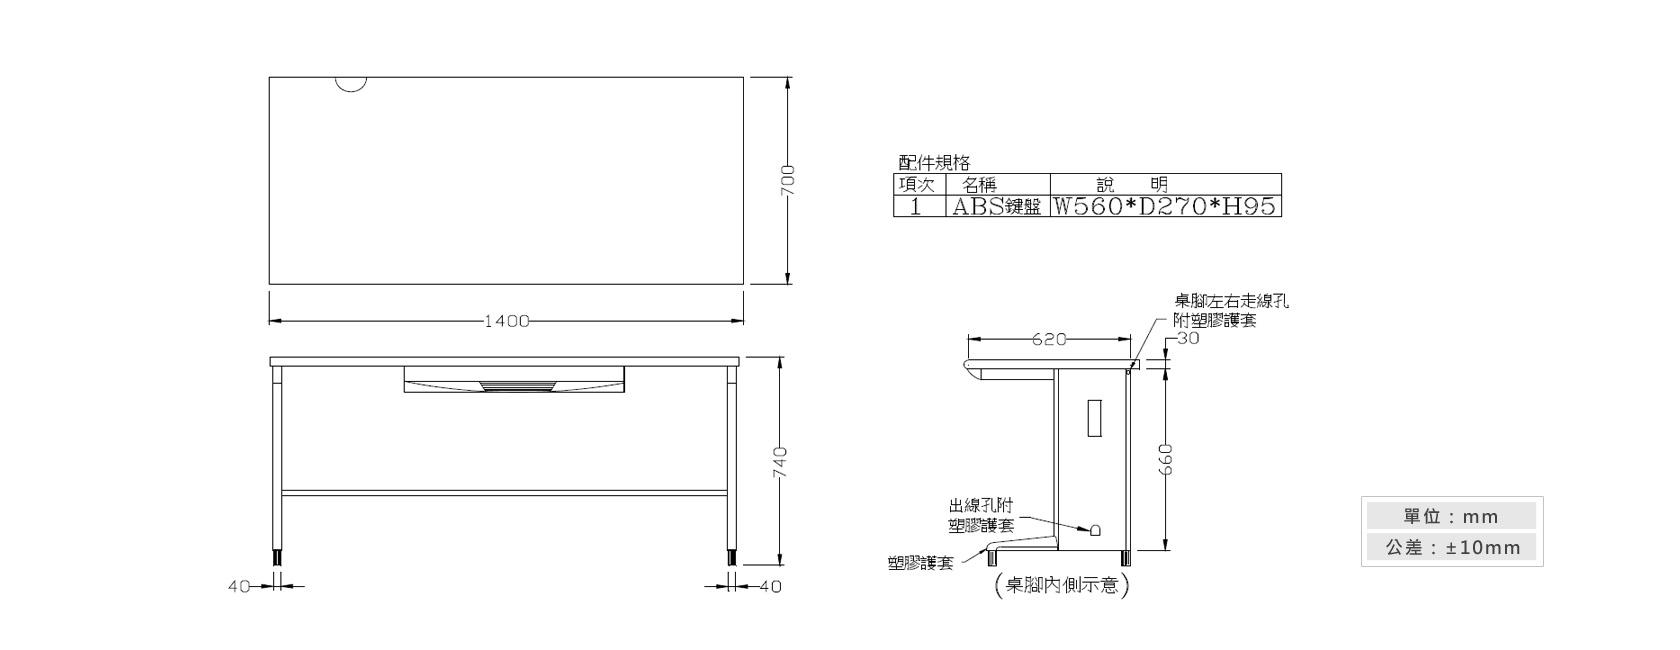 1-19 OA-140辦公桌(附一只ABS鍵盤架)材質說明